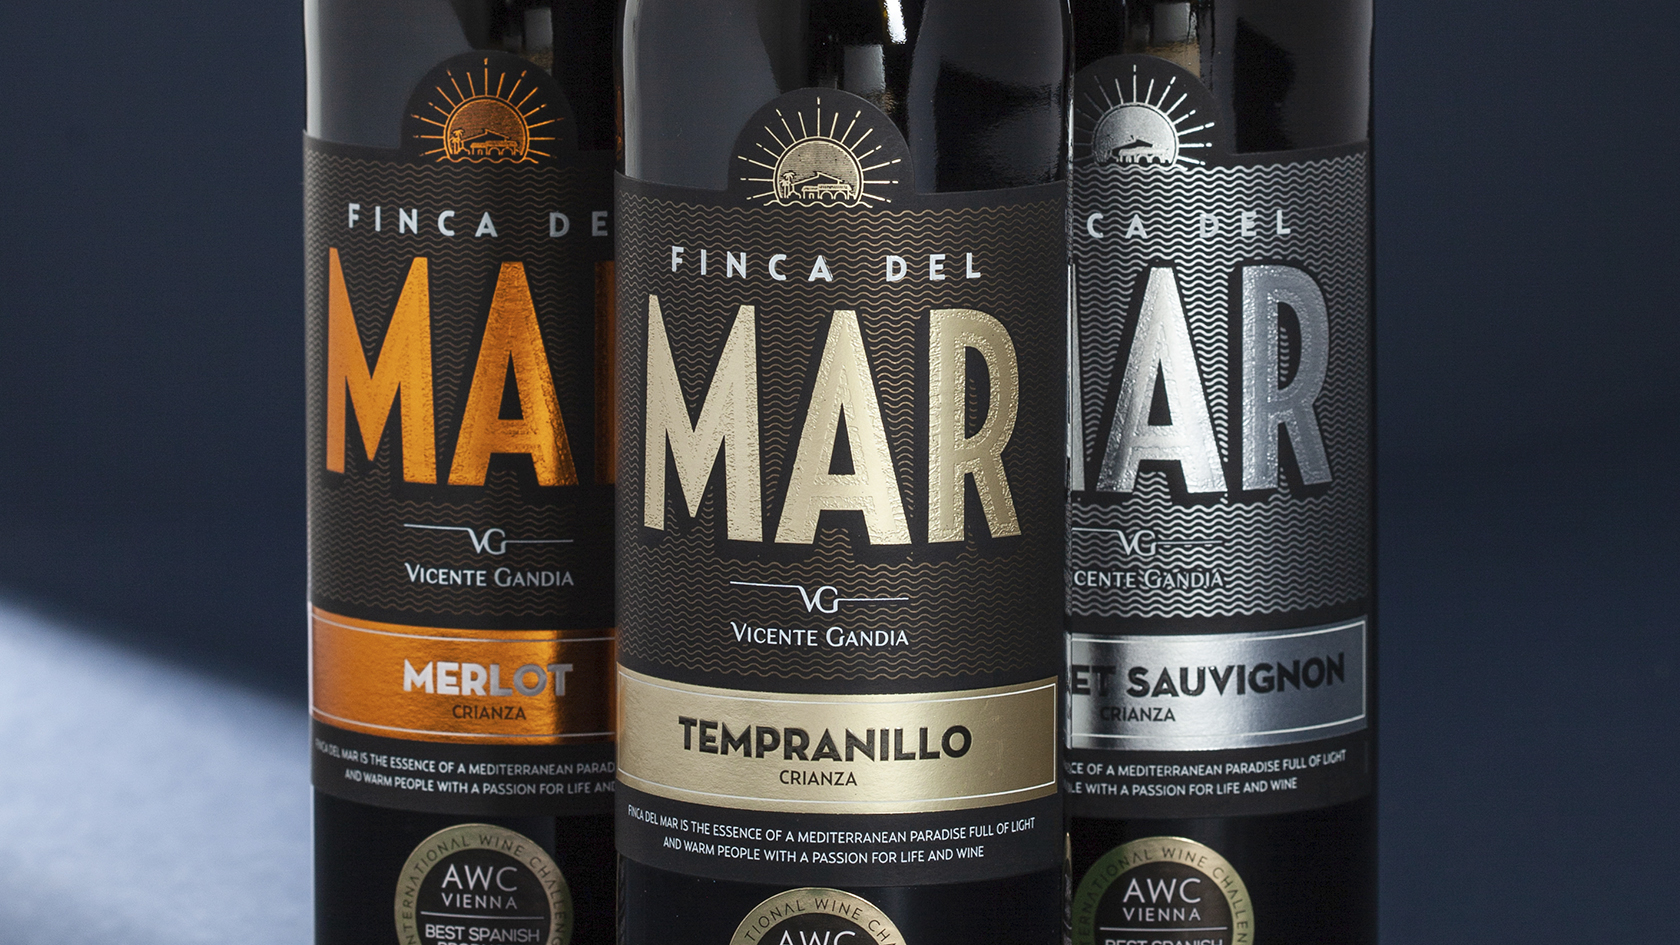 Rediseño de labelling - Diseño de etiqueta vinos Bodegas Vicente Gandía - Diseño para vinos Finca del Mar - Estudio de diseño Valencia Pixelarte